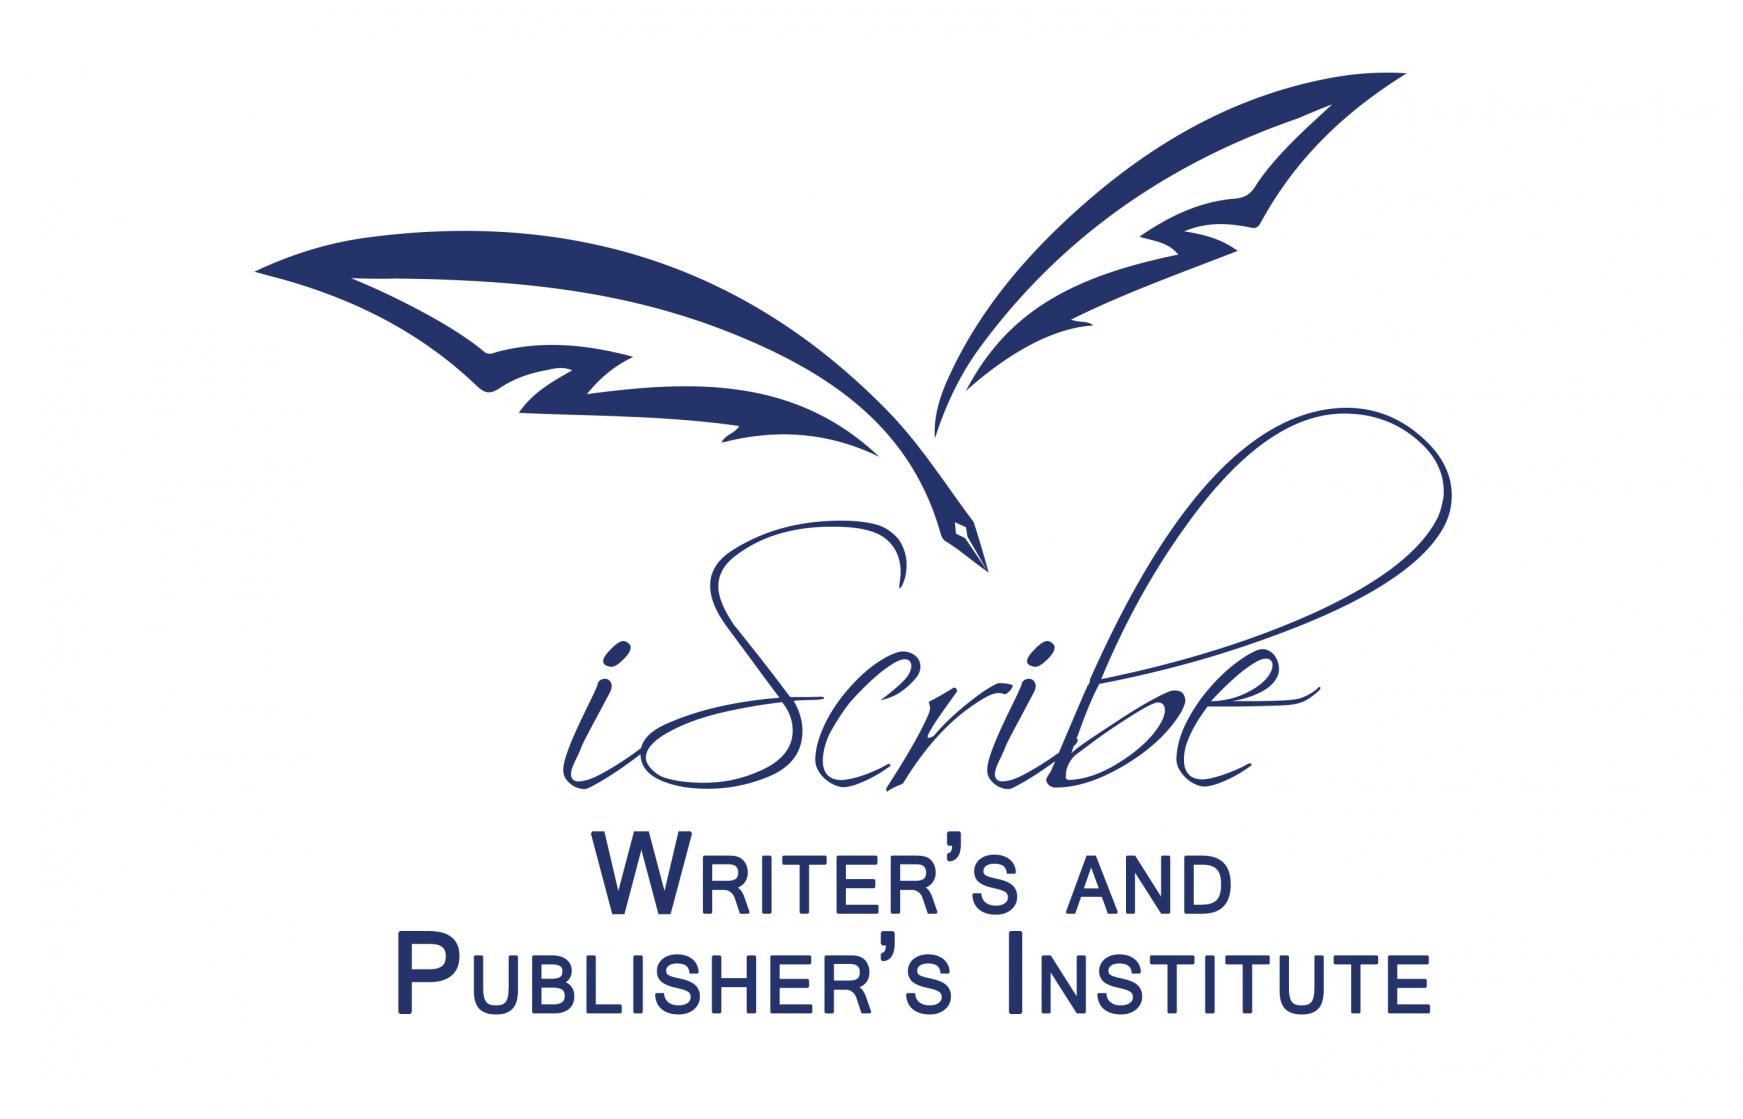 scribe jobs at iscribe